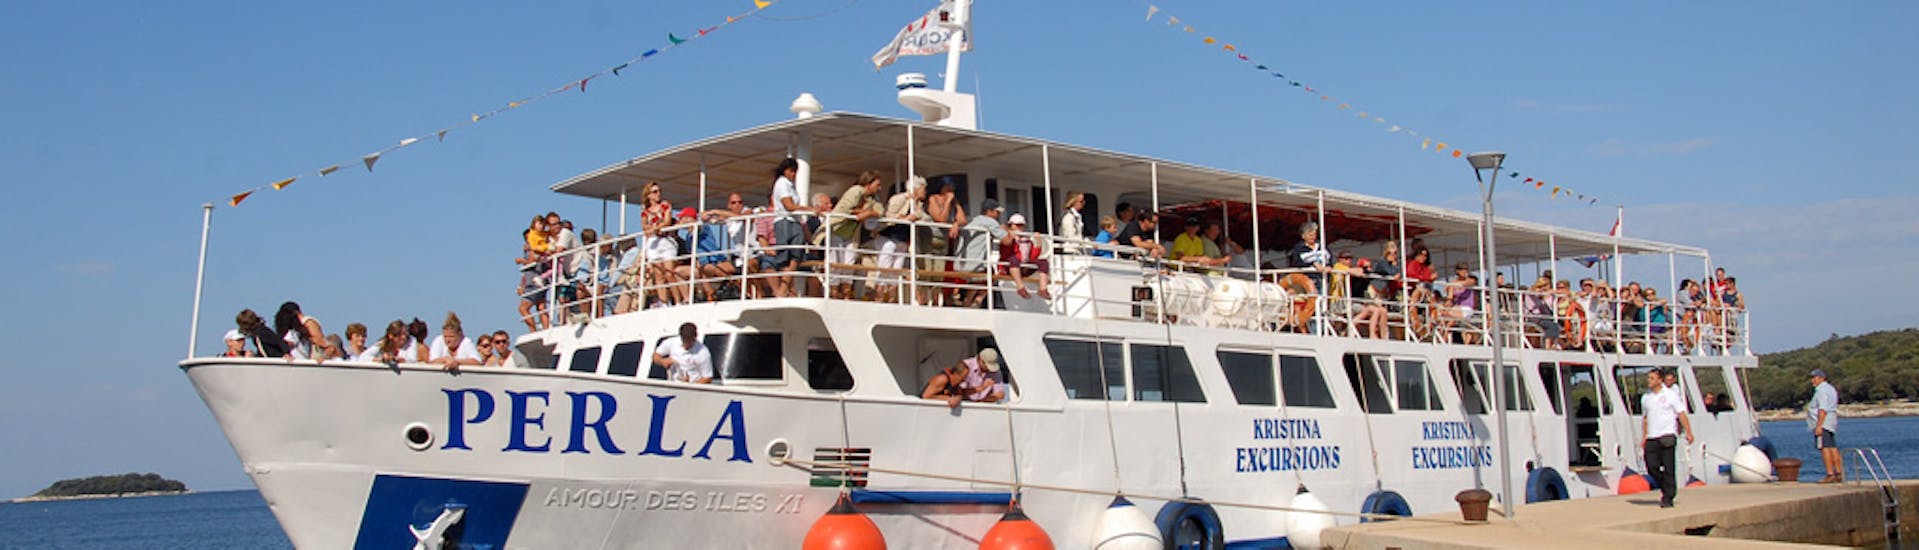 La barca Perla nel porto prima della gita in barca da Parenzo a Rovigno, Leme e Orsera con pranzo con Kristina Excursions.